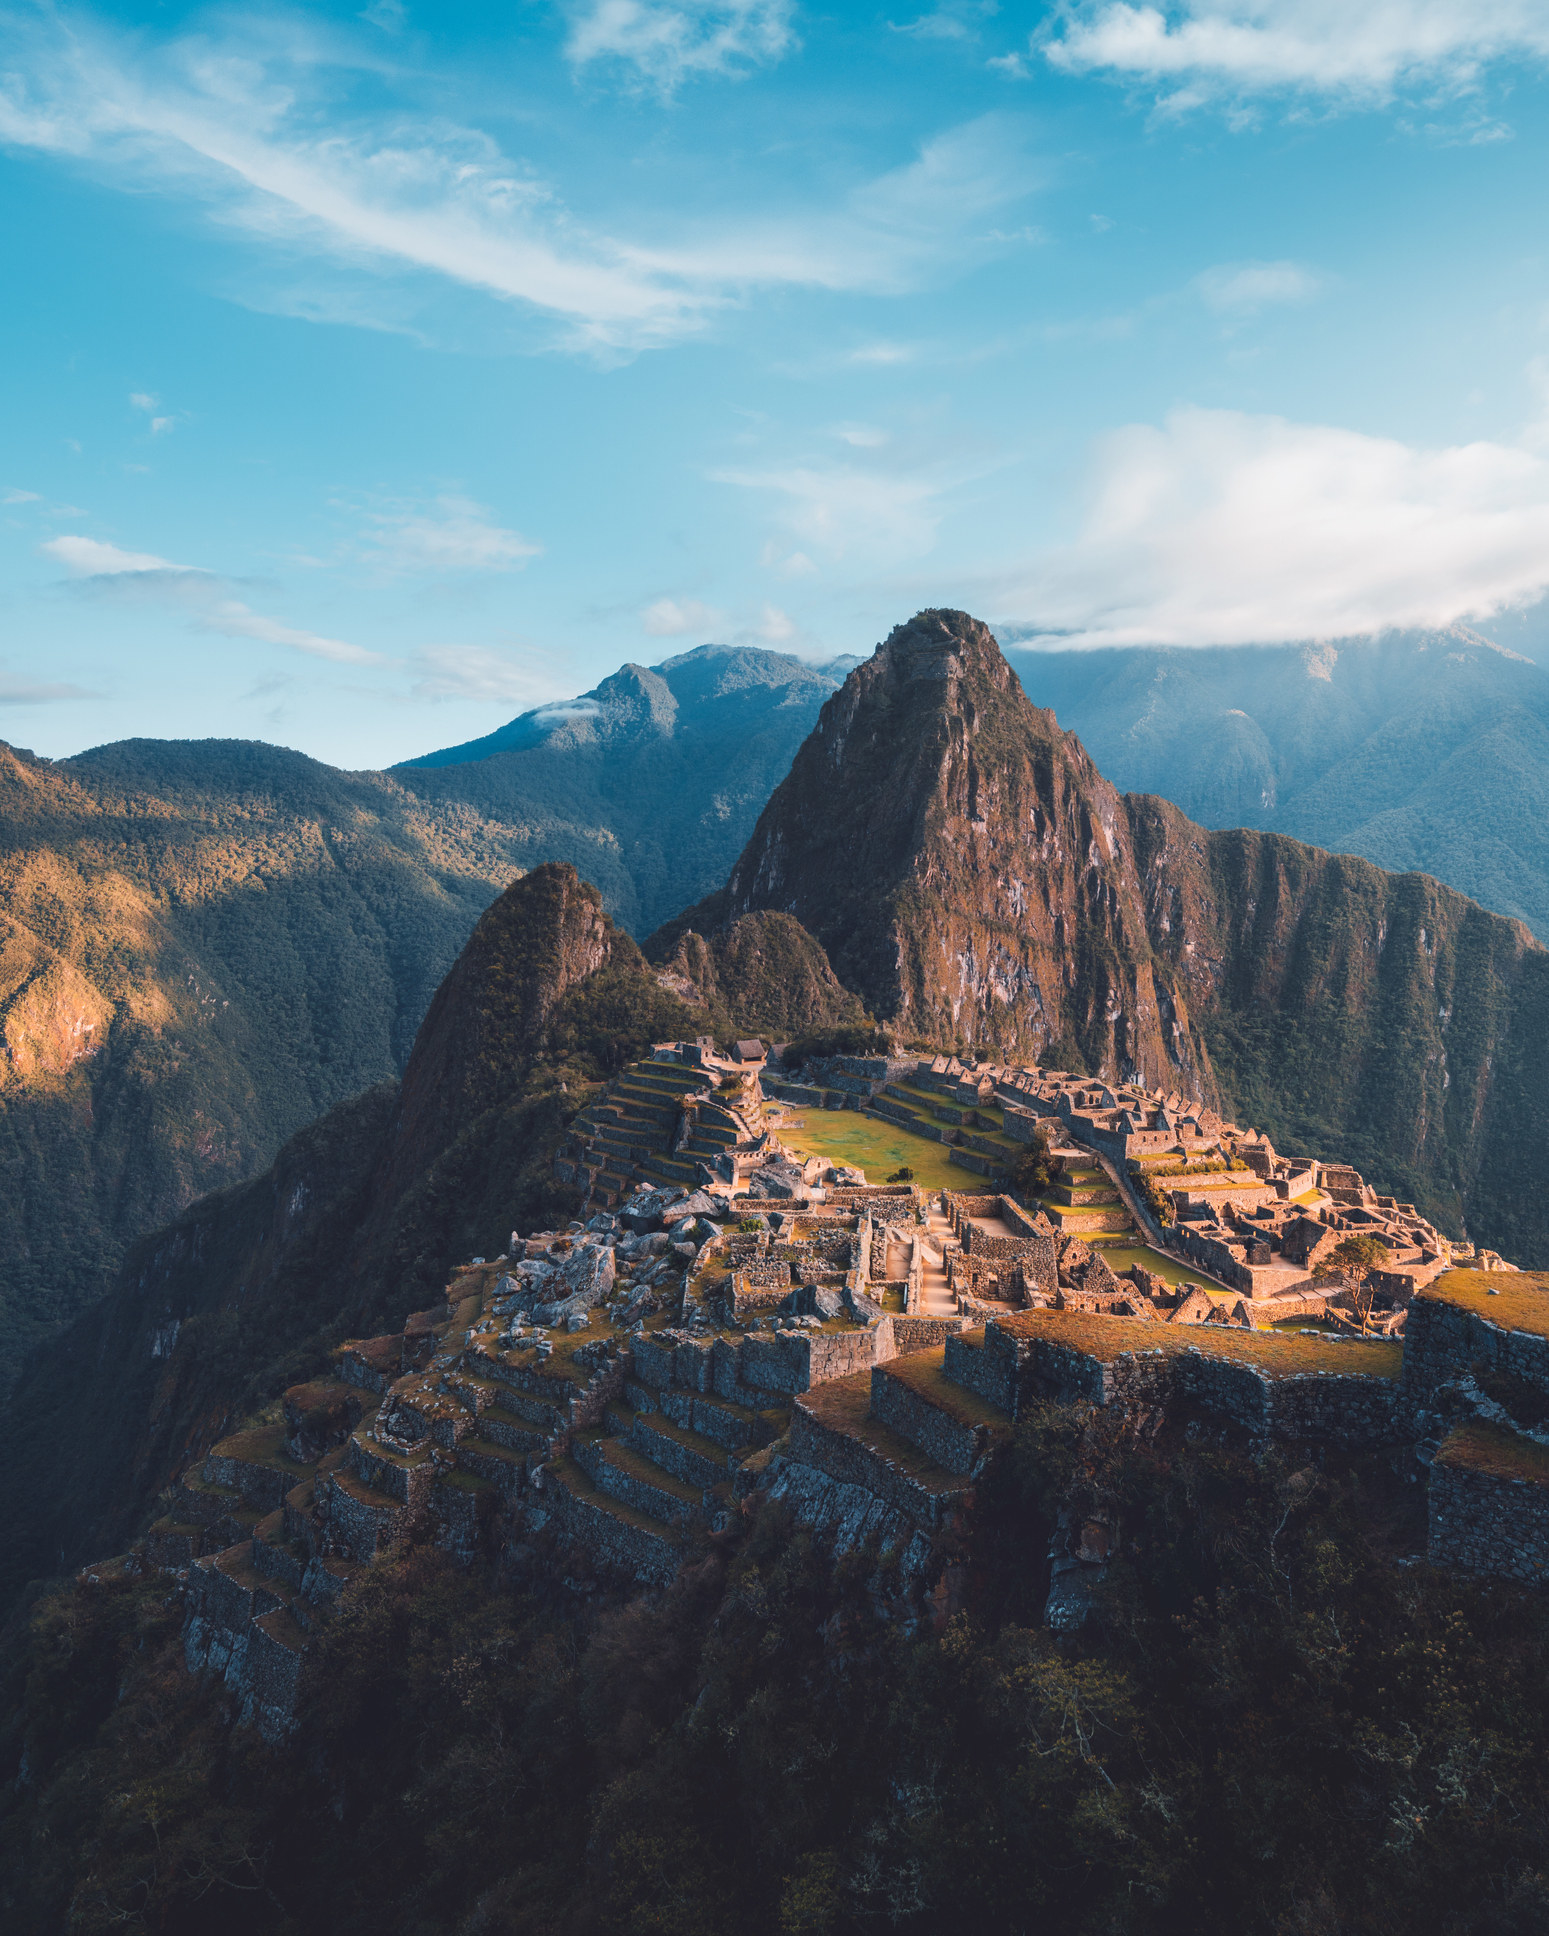 The ruins of Machu Picchu